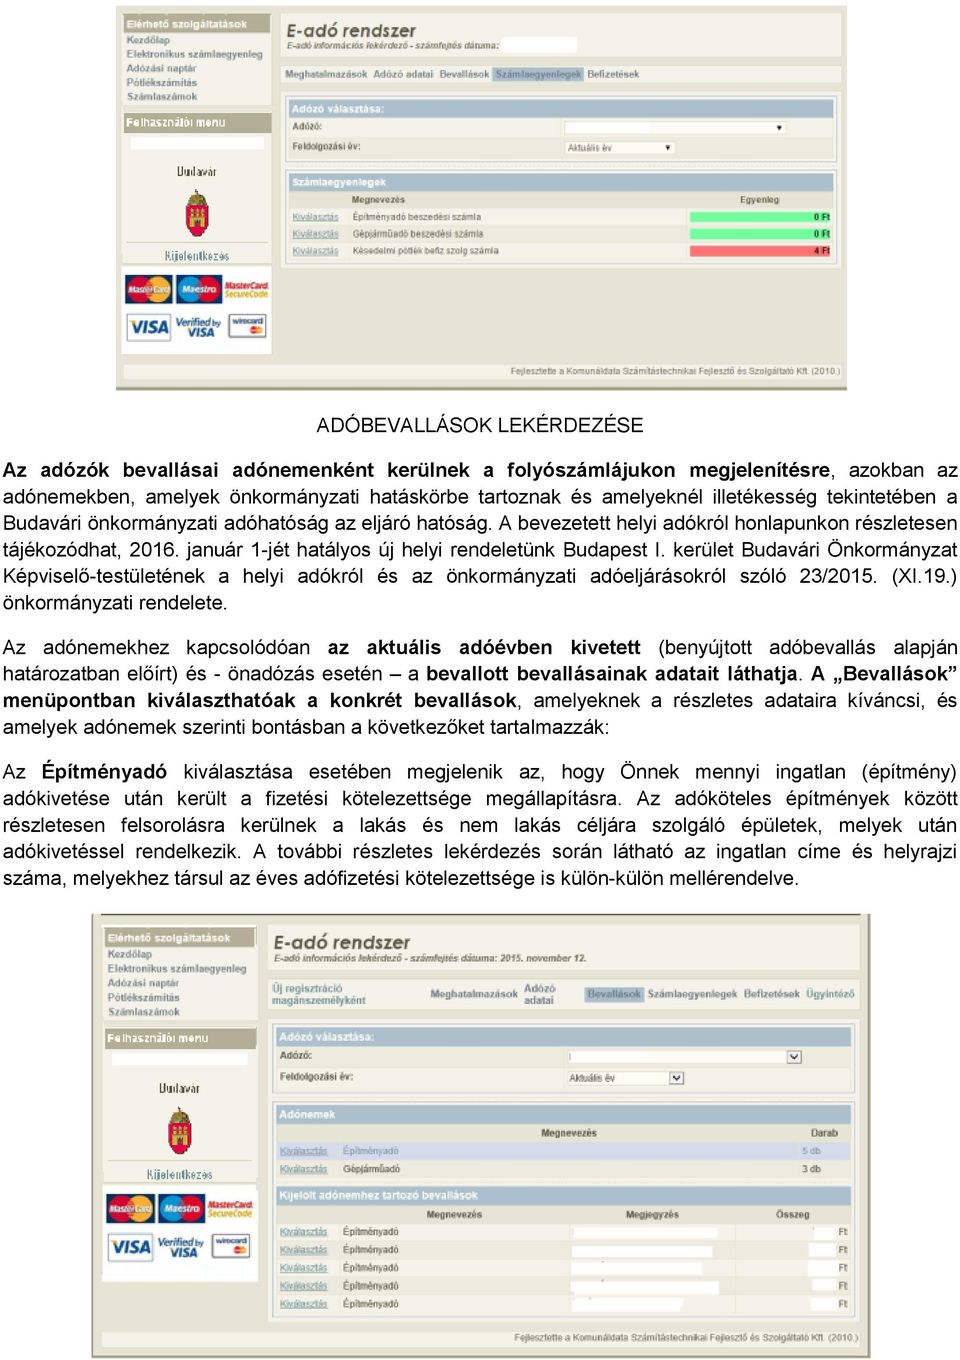 kerület Budavári Önkormányzat Képviselő-testületének a helyi adókról és az önkormányzati adóeljárásokról szóló 23/2015. (XI.19.) önkormányzati rendelete.